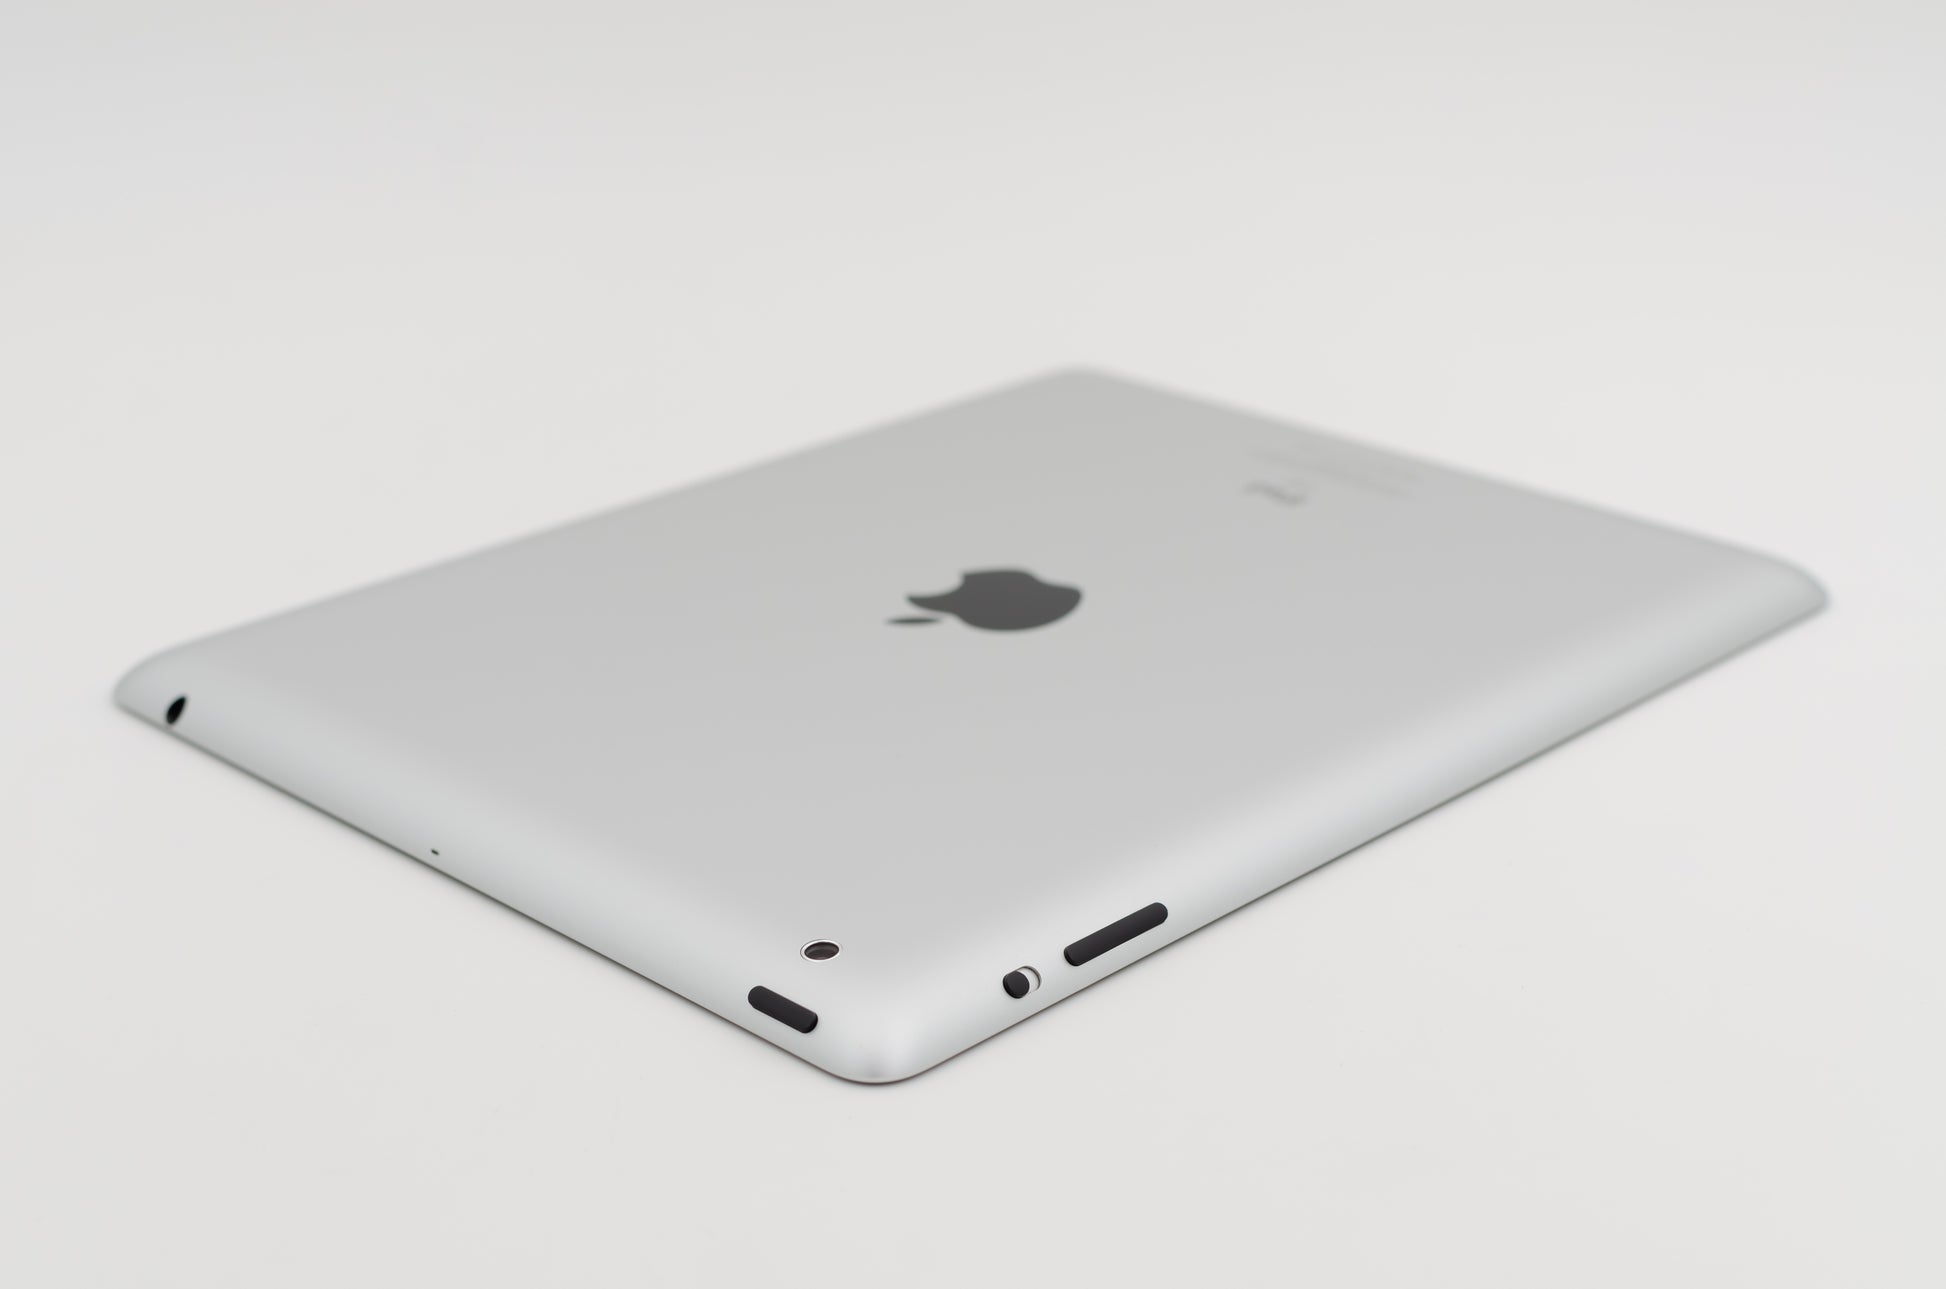 apple-2011-9.7-inch-ipad-2-a1396-silver/black-5